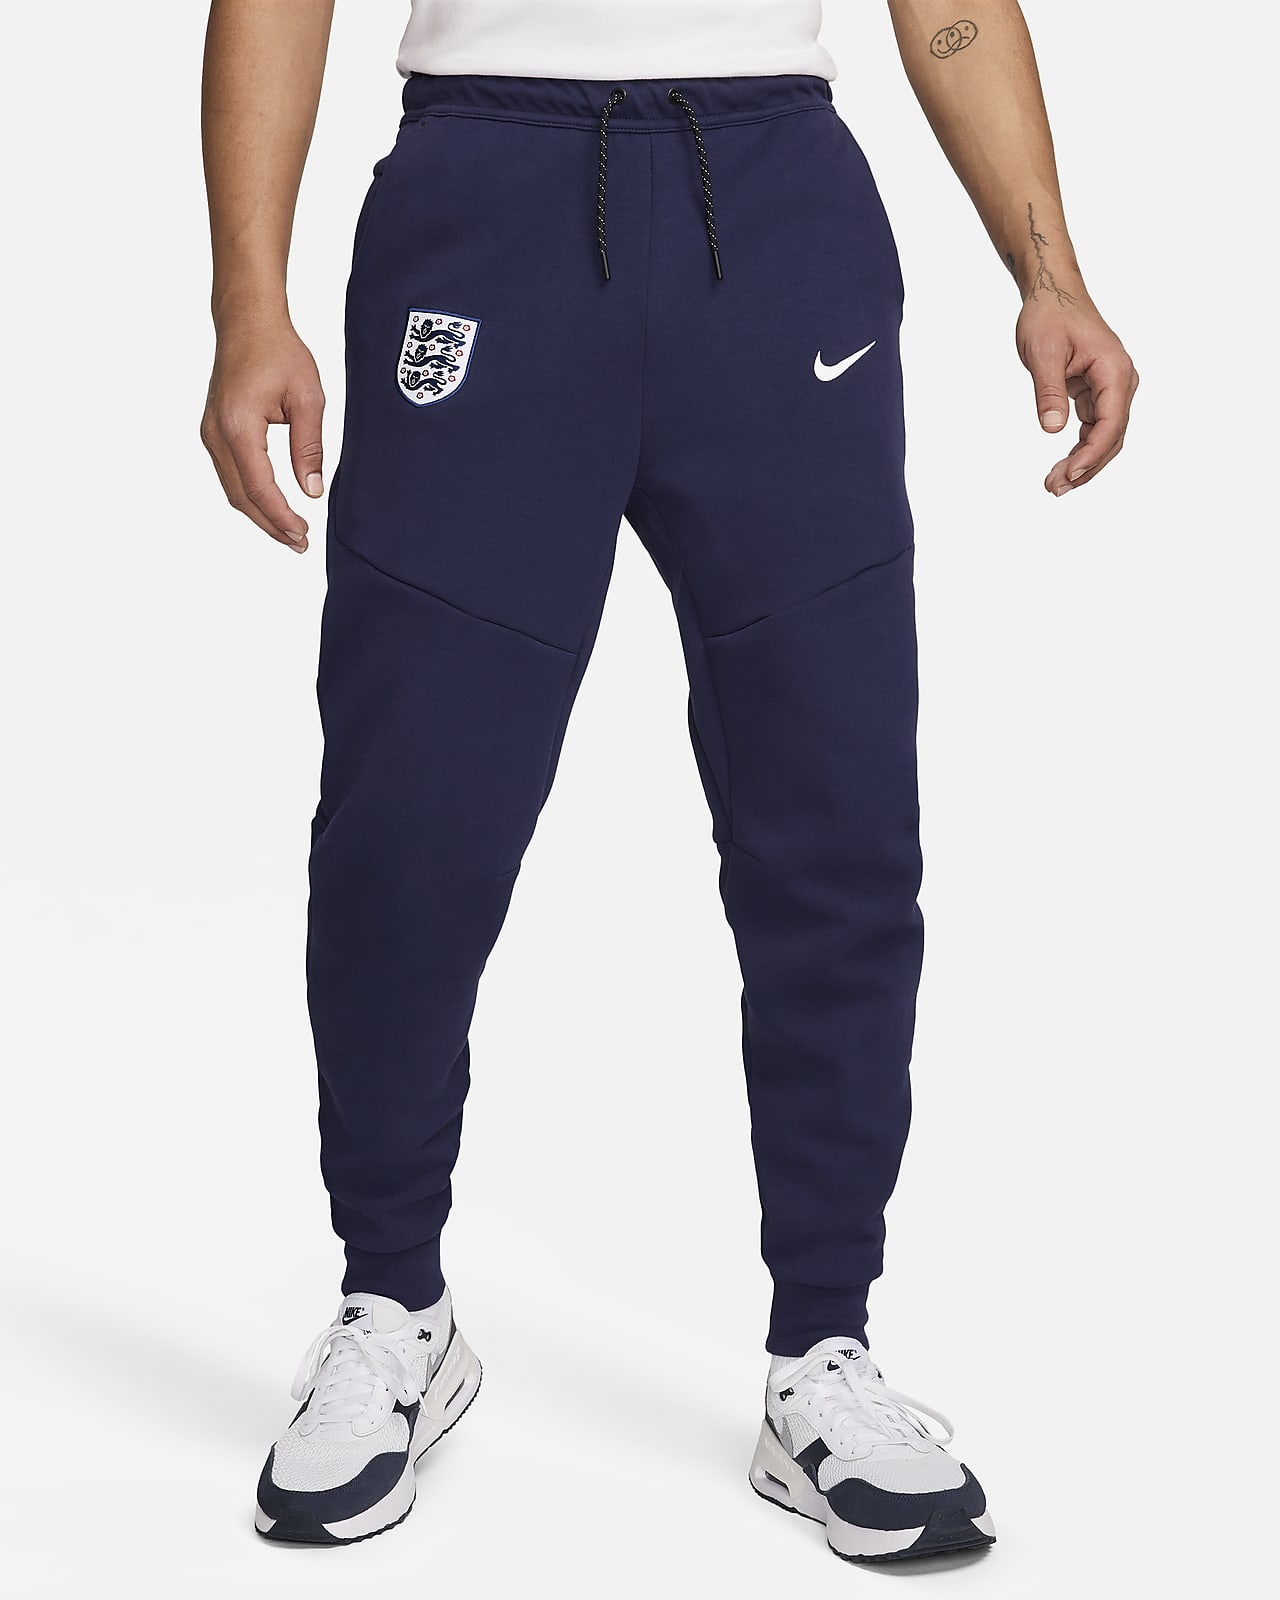 İngiltere Tech Fleece Nike Erkek Futbol Jogger'ı